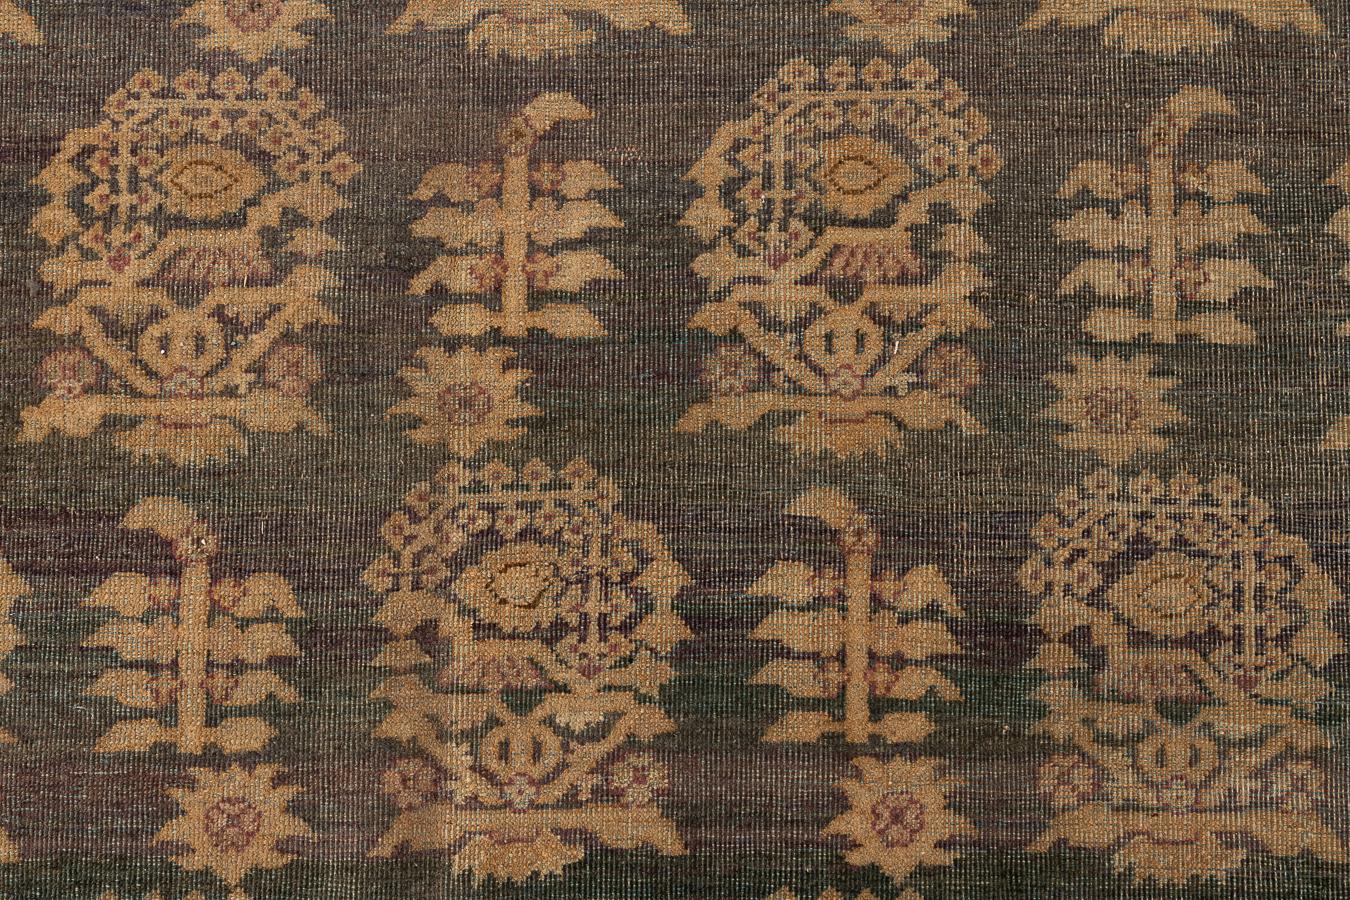 Agra - Nord de l'Inde

Ce splendide tapis au motif de Tabriz a été produit à Agra, en Inde, au XIXe siècle. Les tapis d'Agra sont de la même qualité que les tapis persans, mais ils ont une touche indienne unique.

Agra, célèbre pour le Taj Mahal,